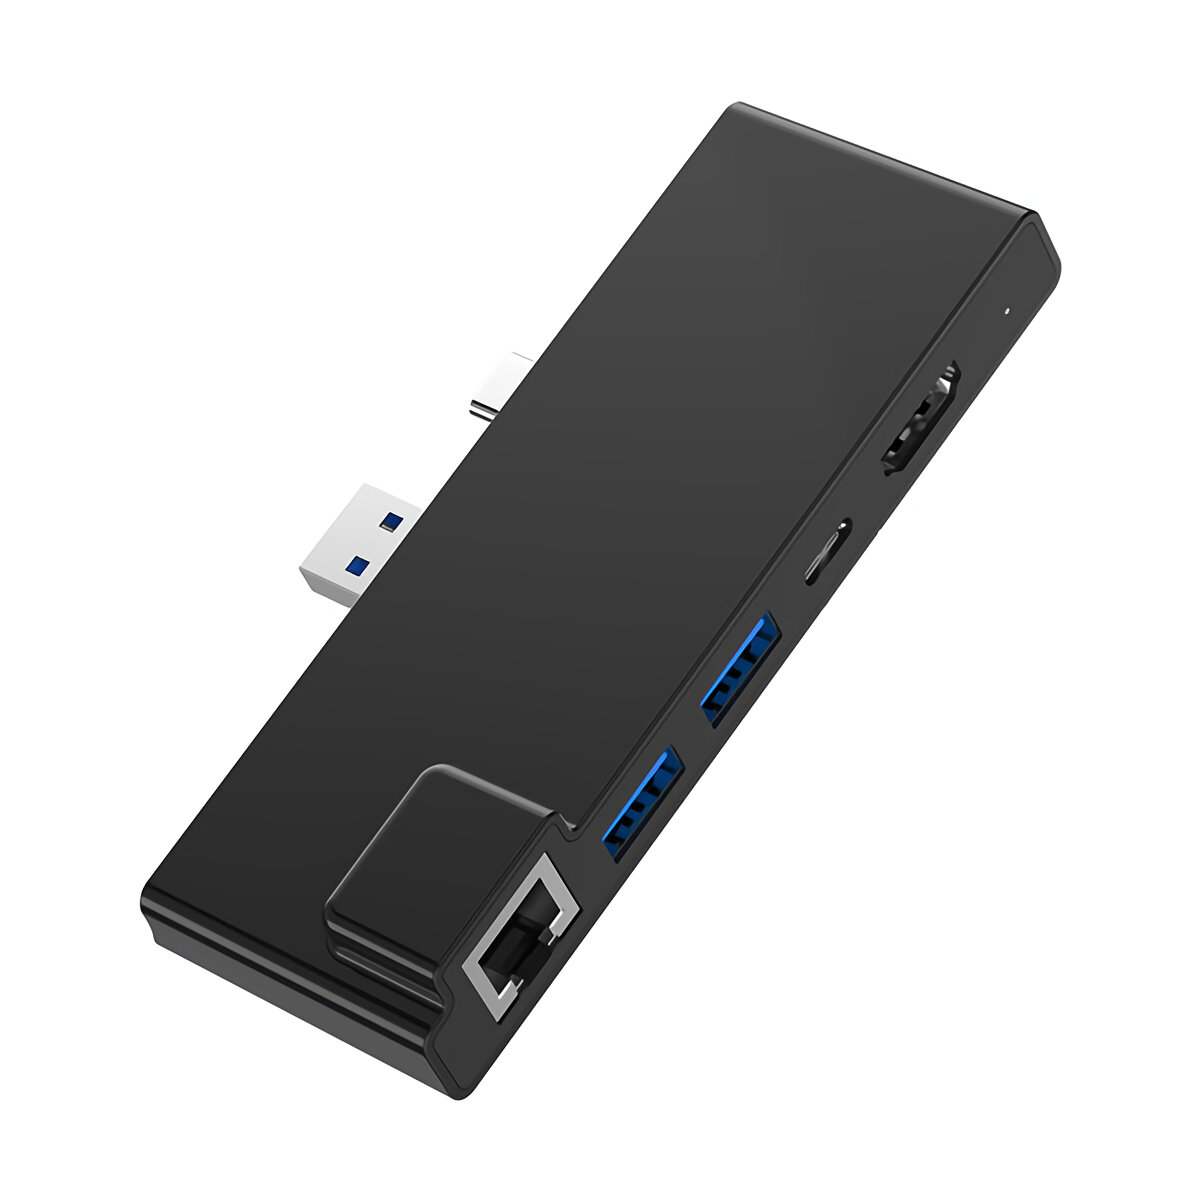 

Rocketek USB 3.0 Hub Type-C 4K HD Rj45 Gigabit Ethernet 1000Mbps Adapter TF/SD Card Reader for Surface Pro 7